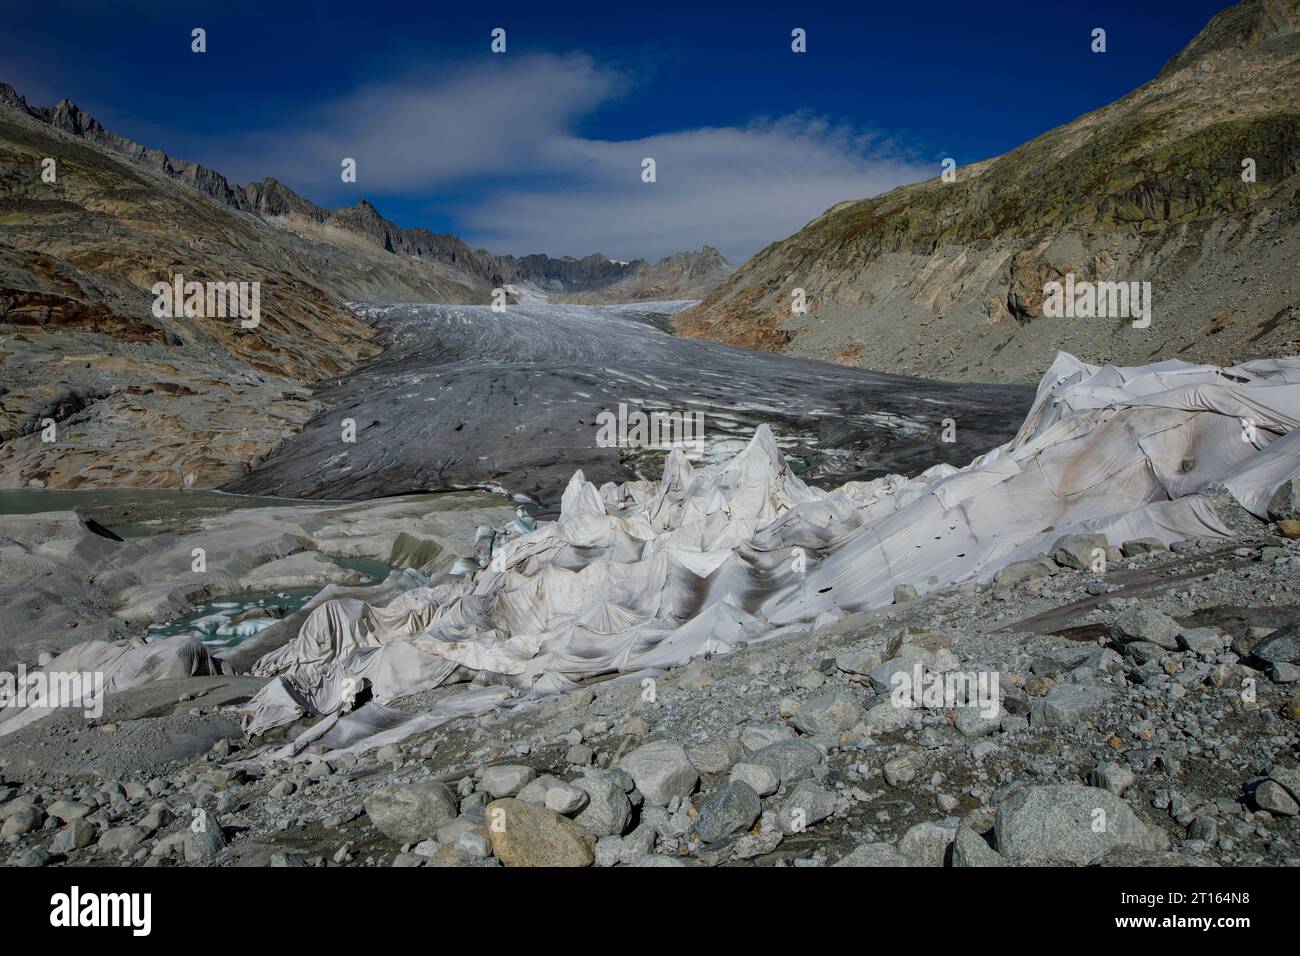 Clima | albedo | Rodano: Enormi coperte di pile coprono parti del ghiacciaio del Rodano in Svizzera nel tentativo di fermare l'inevitabile scioglimento della neve e del ghiaccio. Nel 2018, il ghiacciaio del Rodano (nella foto) si è fuso più di 70 centimetri di spessore. Secondo un recente rapporto dell'Accademia svizzera delle scienze, lo stesso ghiacciaio ha perso oltre 2 metri di spessore nei due anni del 2022/2023. Mentre la neve è un brillante riflesso dell'energia del sole, il ghiaccio più scuro assorbe invece l'energia, accelerando lo scioglimento del ghiacciaio. Il colore e l'oscurità dei ghiacciai variano da un lato all'altro Foto Stock